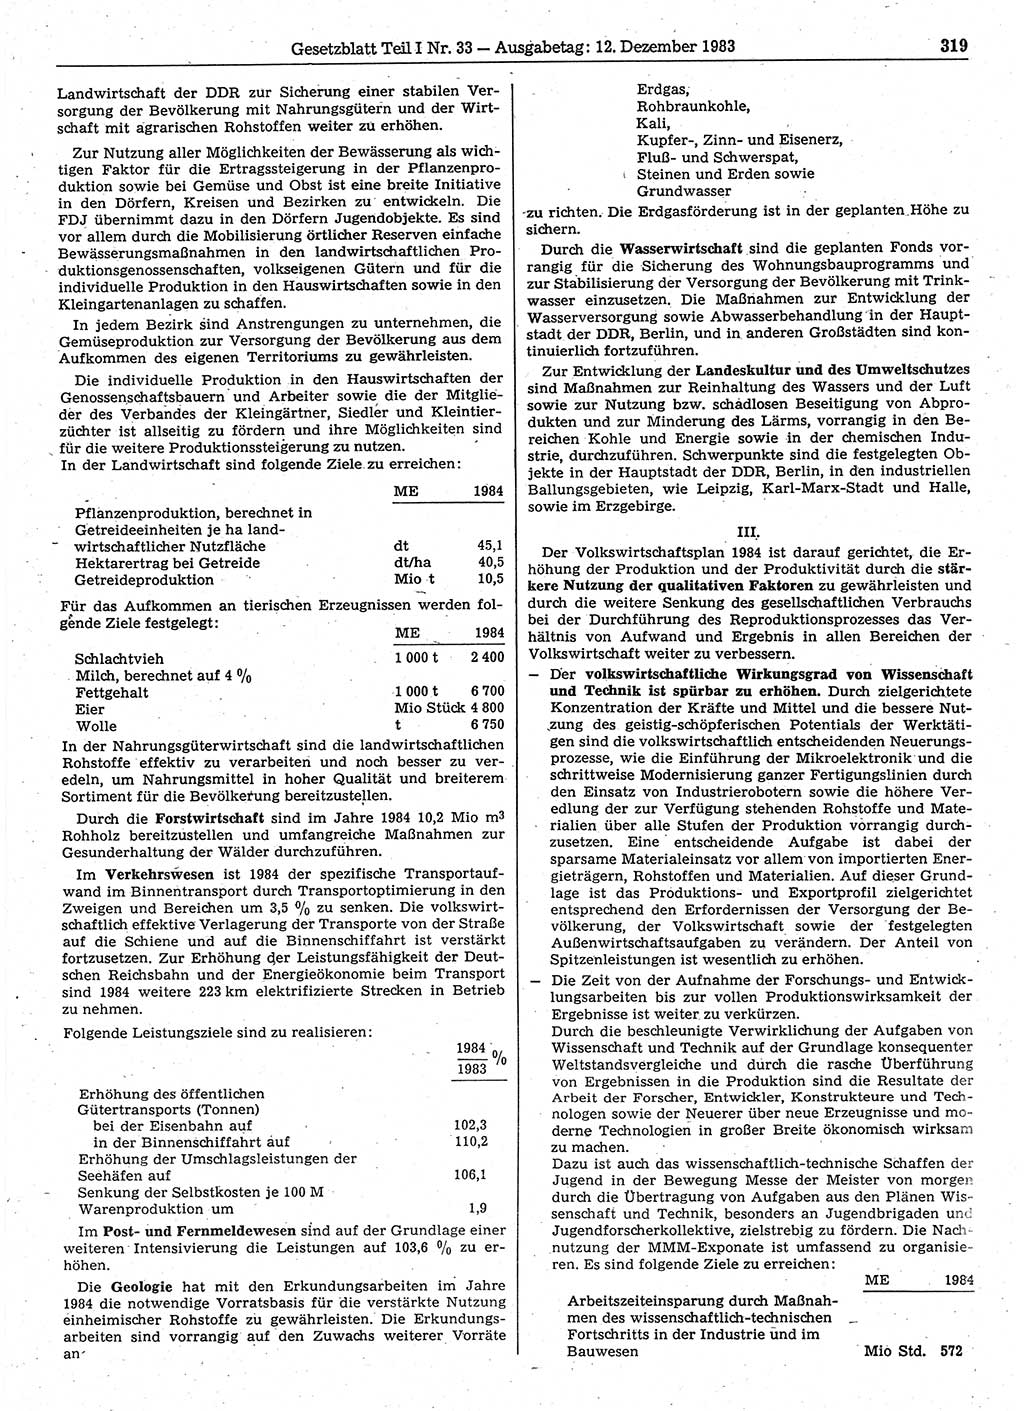 Gesetzblatt (GBl.) der Deutschen Demokratischen Republik (DDR) Teil Ⅰ 1983, Seite 319 (GBl. DDR Ⅰ 1983, S. 319)